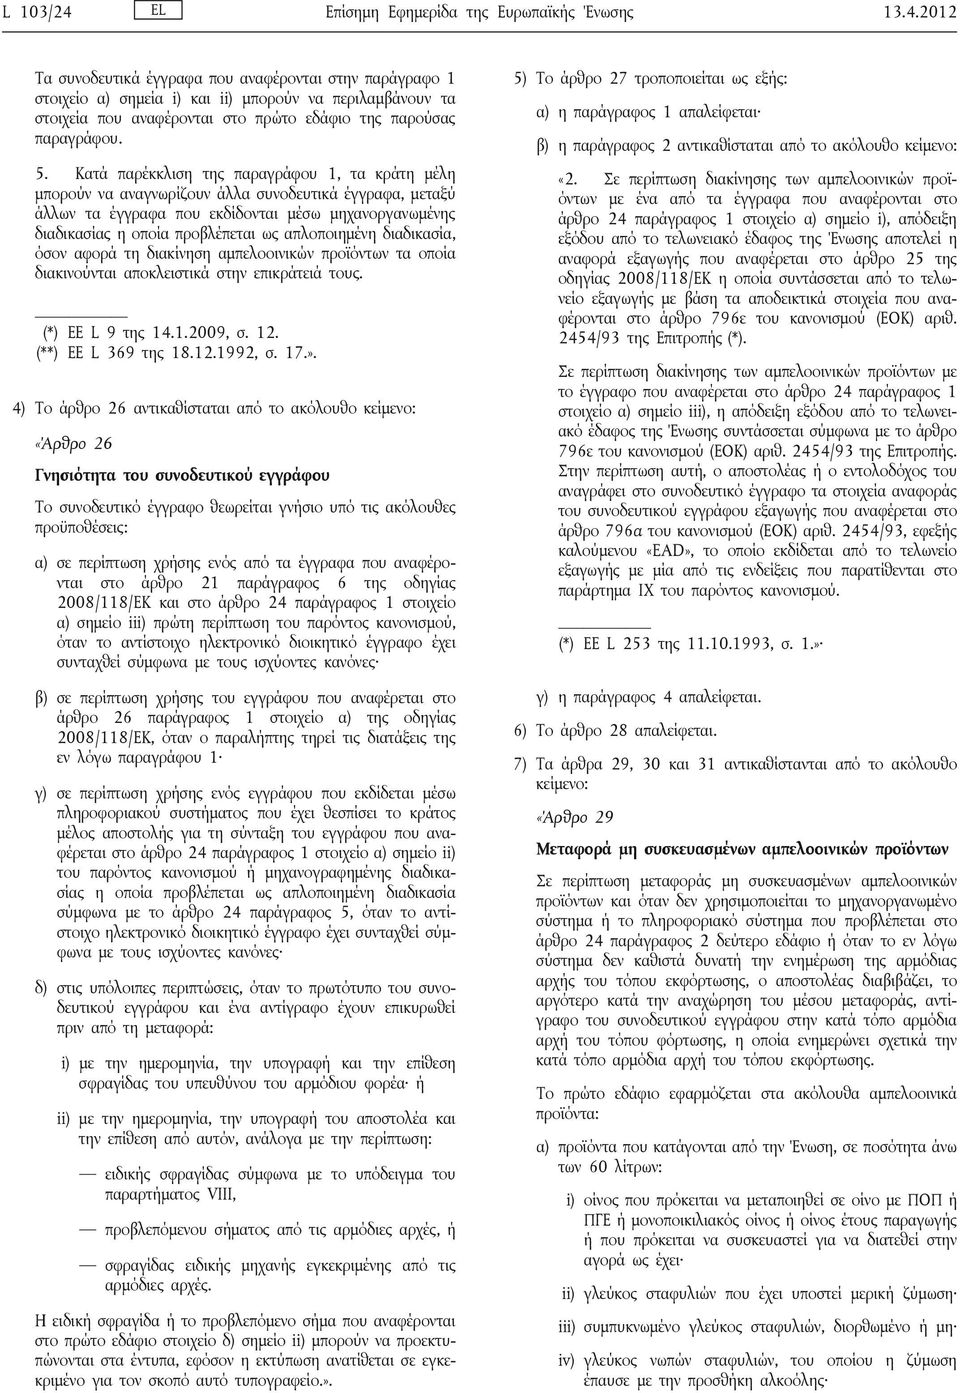 απλοποιημένη διαδικασία, όσον αφορά τη διακίνηση αμπελοοινικών προϊόντων τα οποία διακινούνται αποκλειστικά στην επικράτειά τους. (*) ΕΕ L 9 της 14.1.2009, σ. 12. (**) ΕΕ L 369 της 18.12.1992, σ. 17.